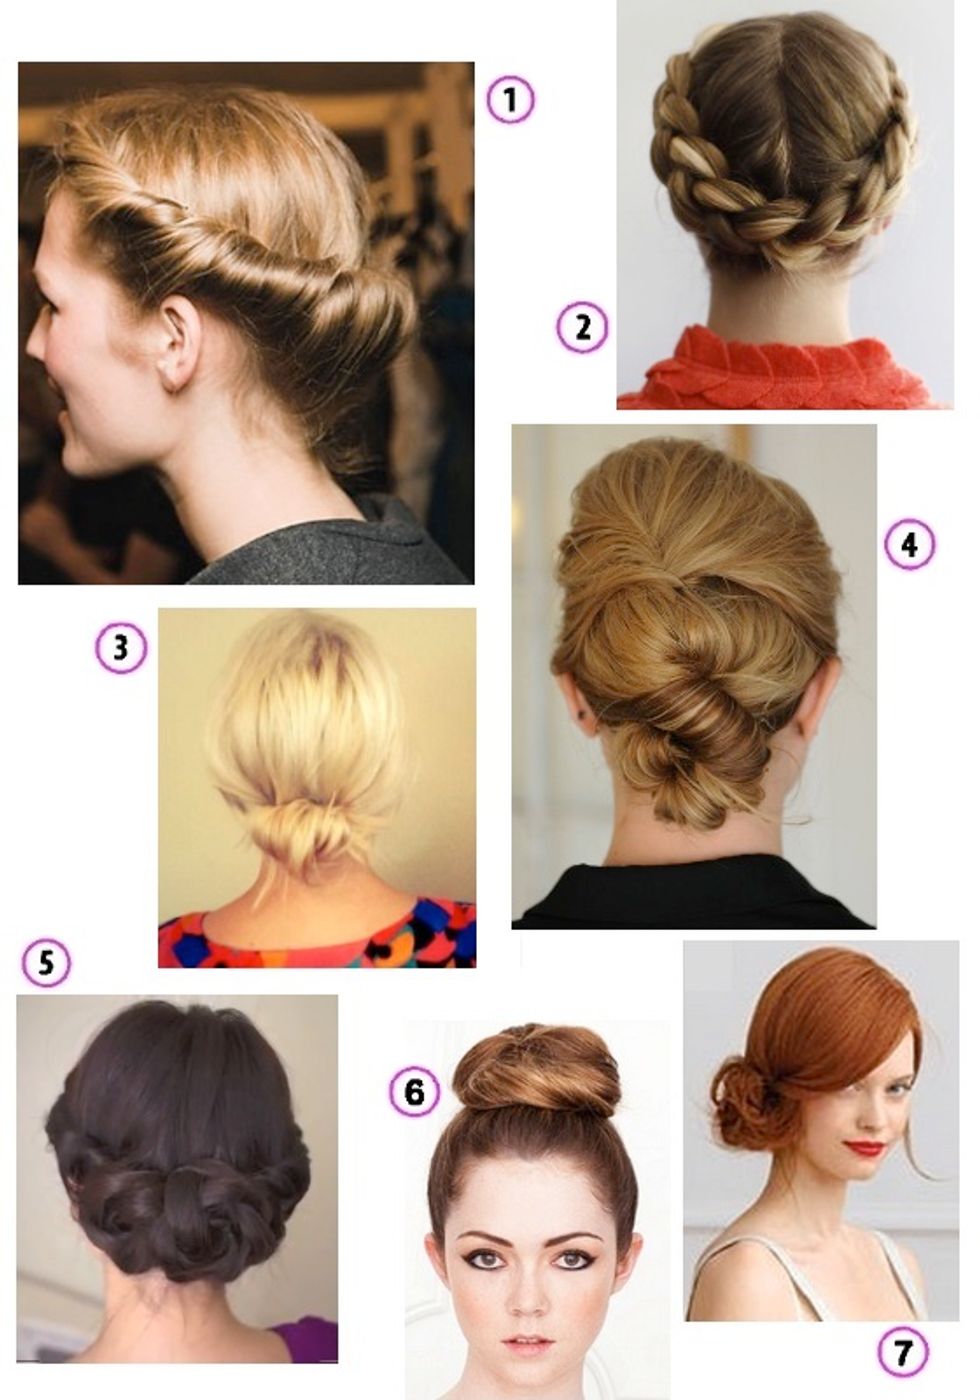 Look of the Week: Seven Easy DIY Hair Tutorials